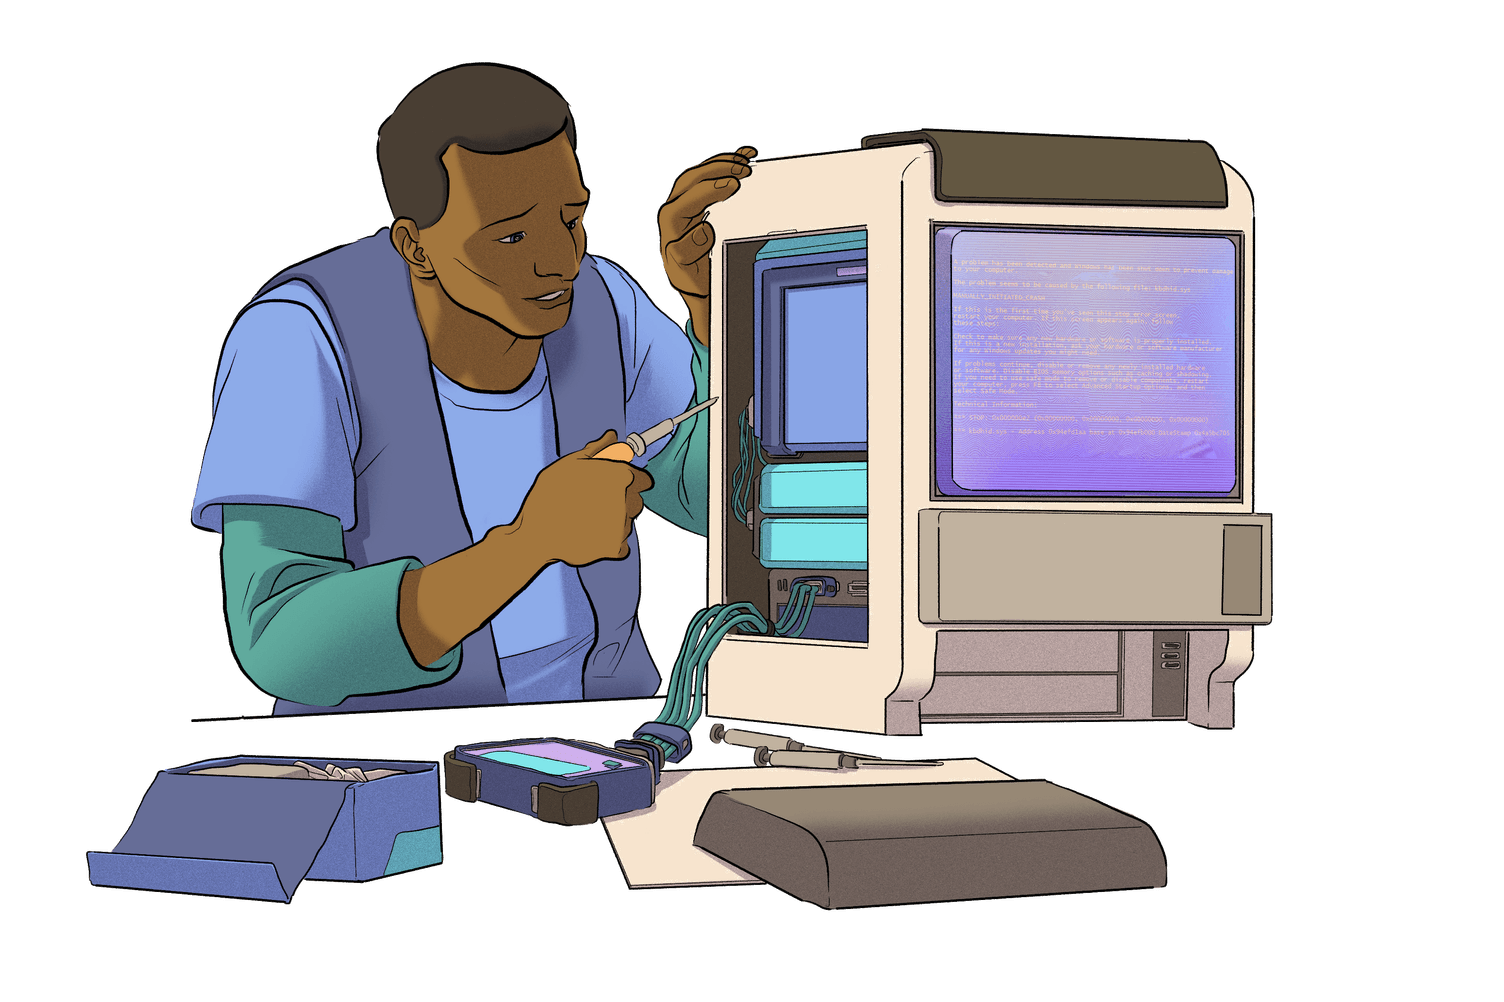 Imaxe dunha persoa a traballar nun ordenador.